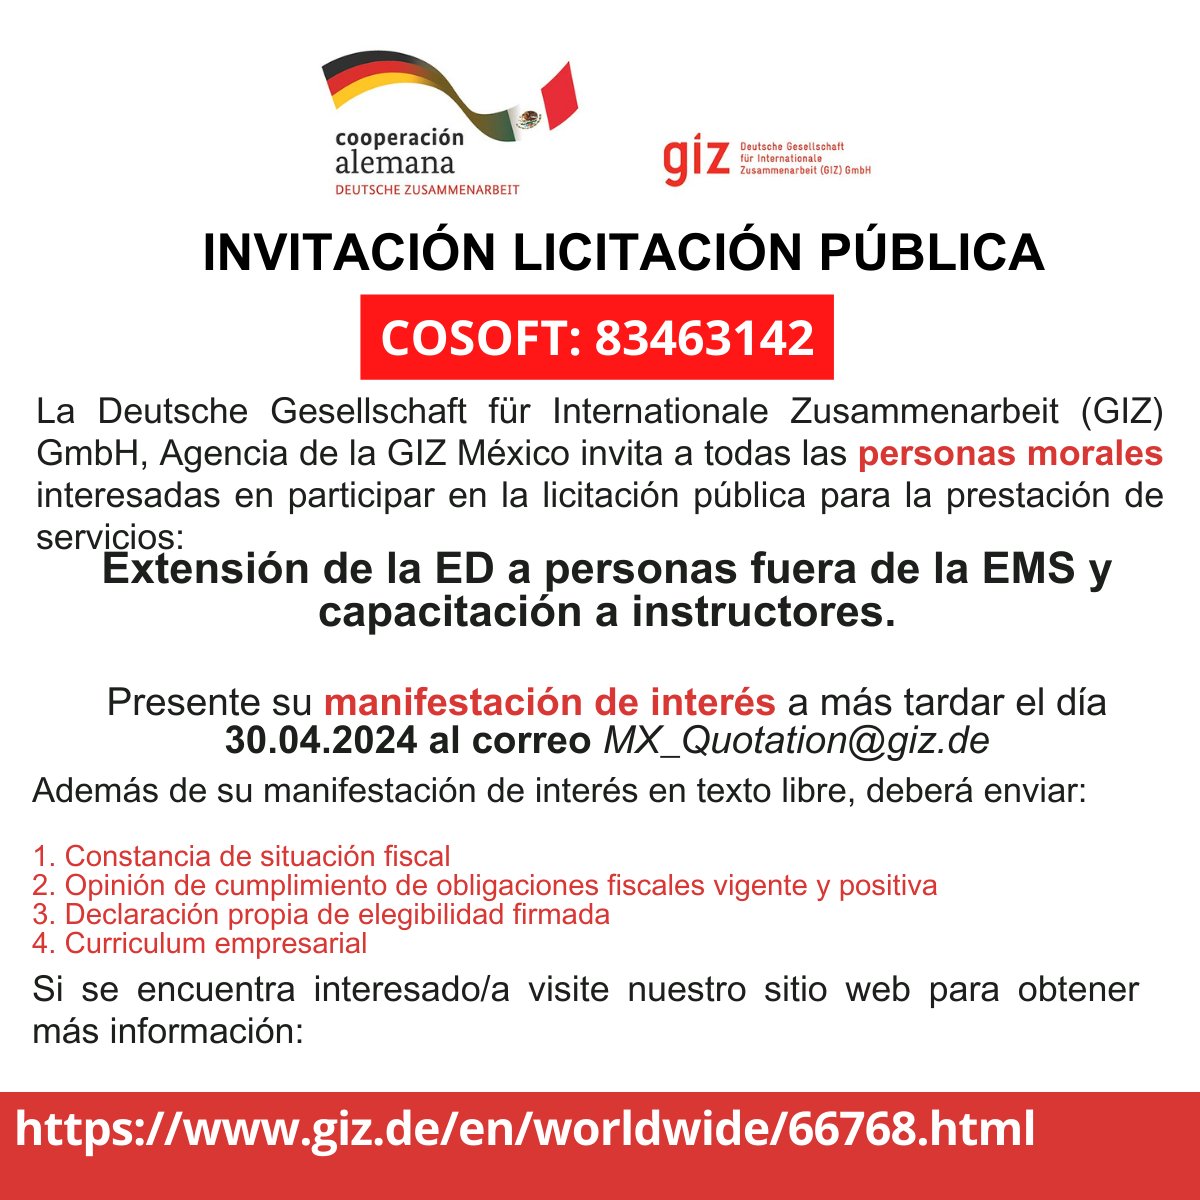 La Deutsche Gesellschaft für Internationale Zusammenarbeit (GIZ) GmbH, Agencia de la GIZ México invita a todas las personas morales interesadas en participar en la siguiente licitación: